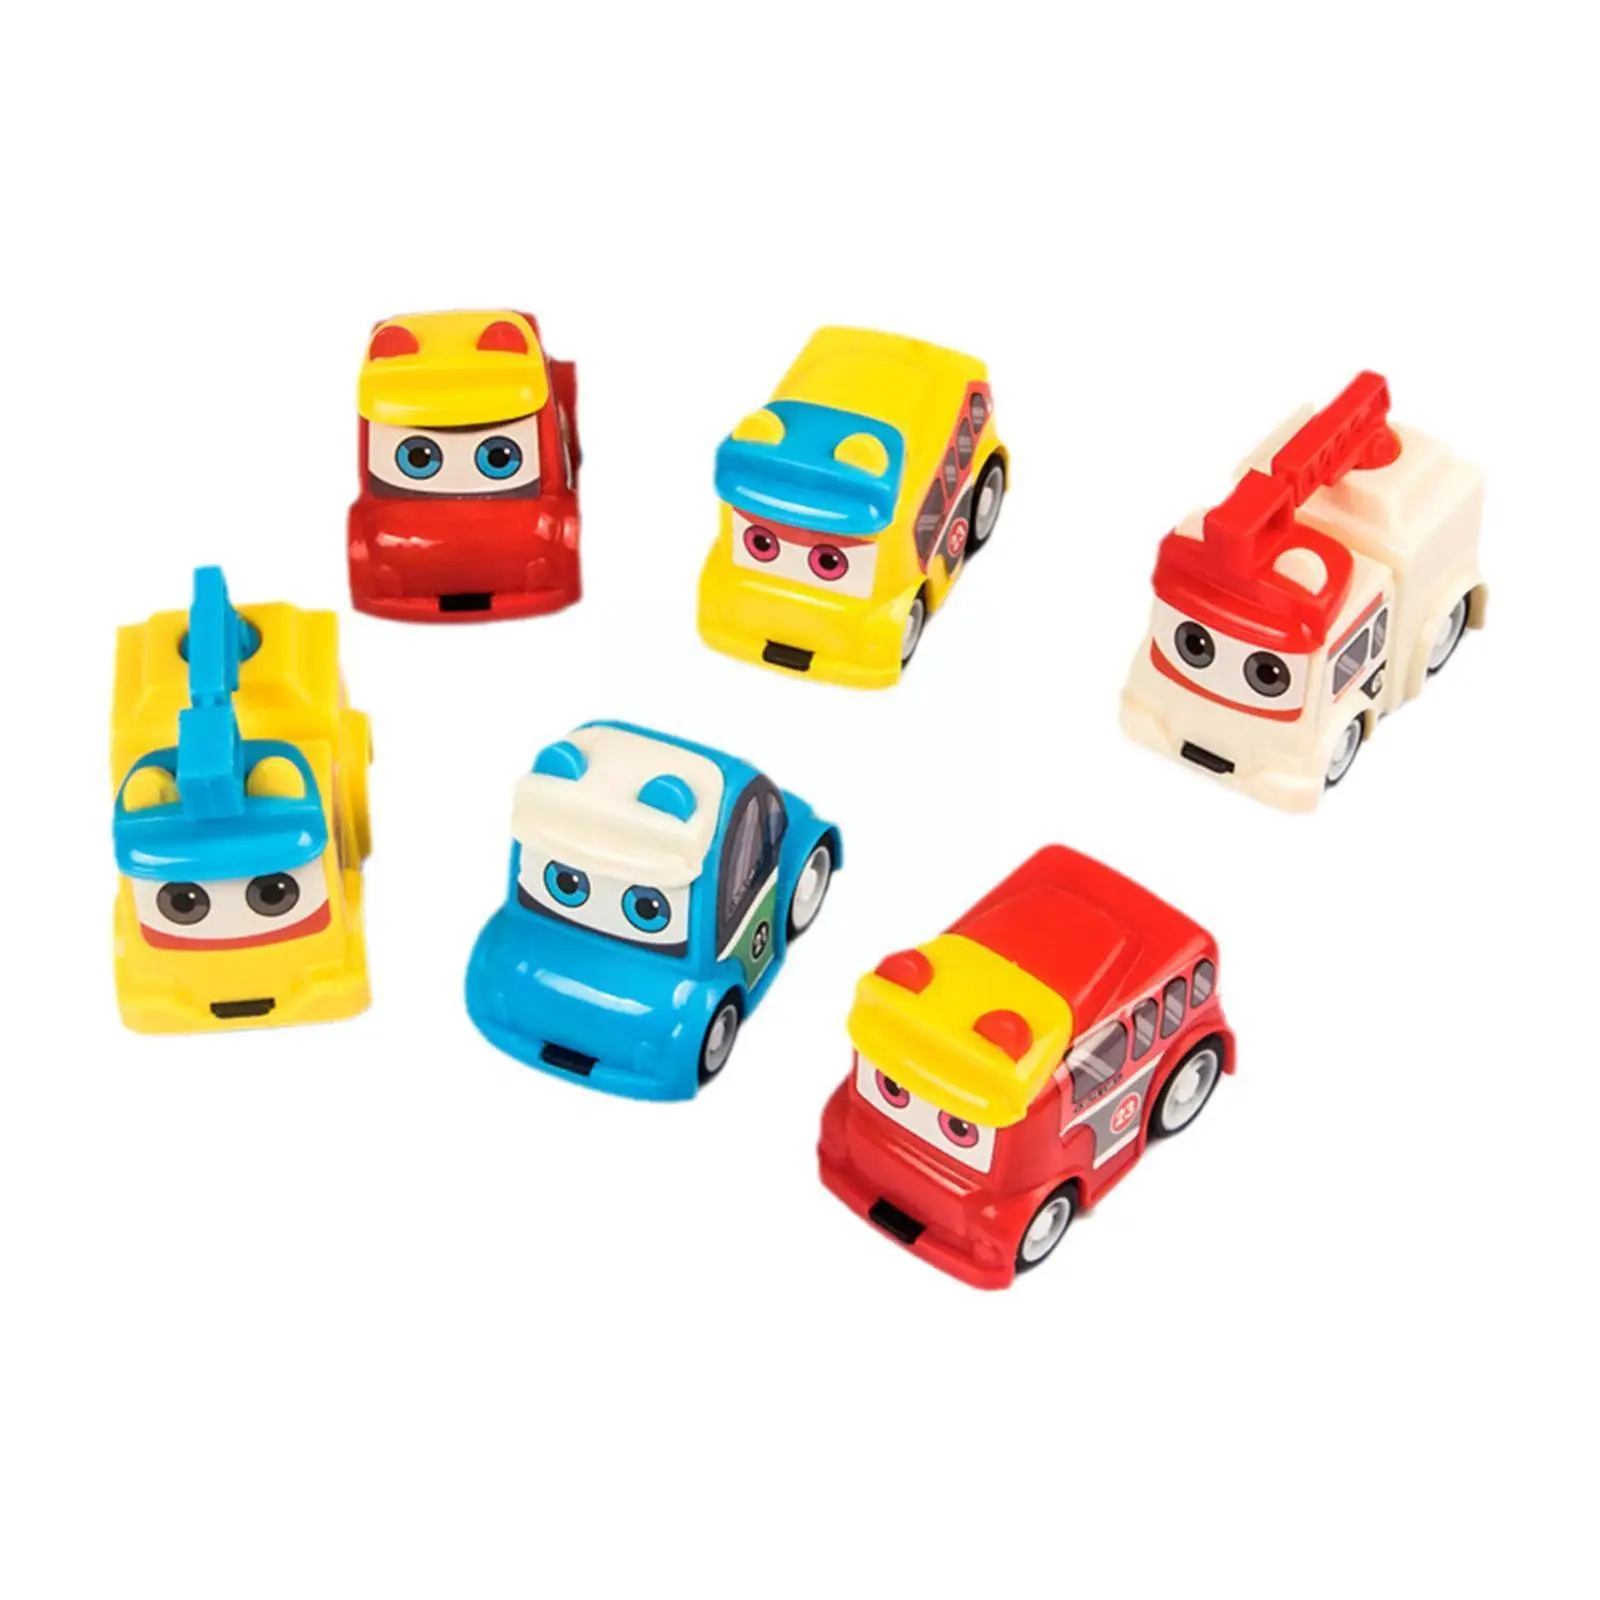 

Игрушечный автомобиль с отрывом, детский мини-мультипликационный маленький автобус, модель грузовика, милая пластиковая игрушка для детей,...